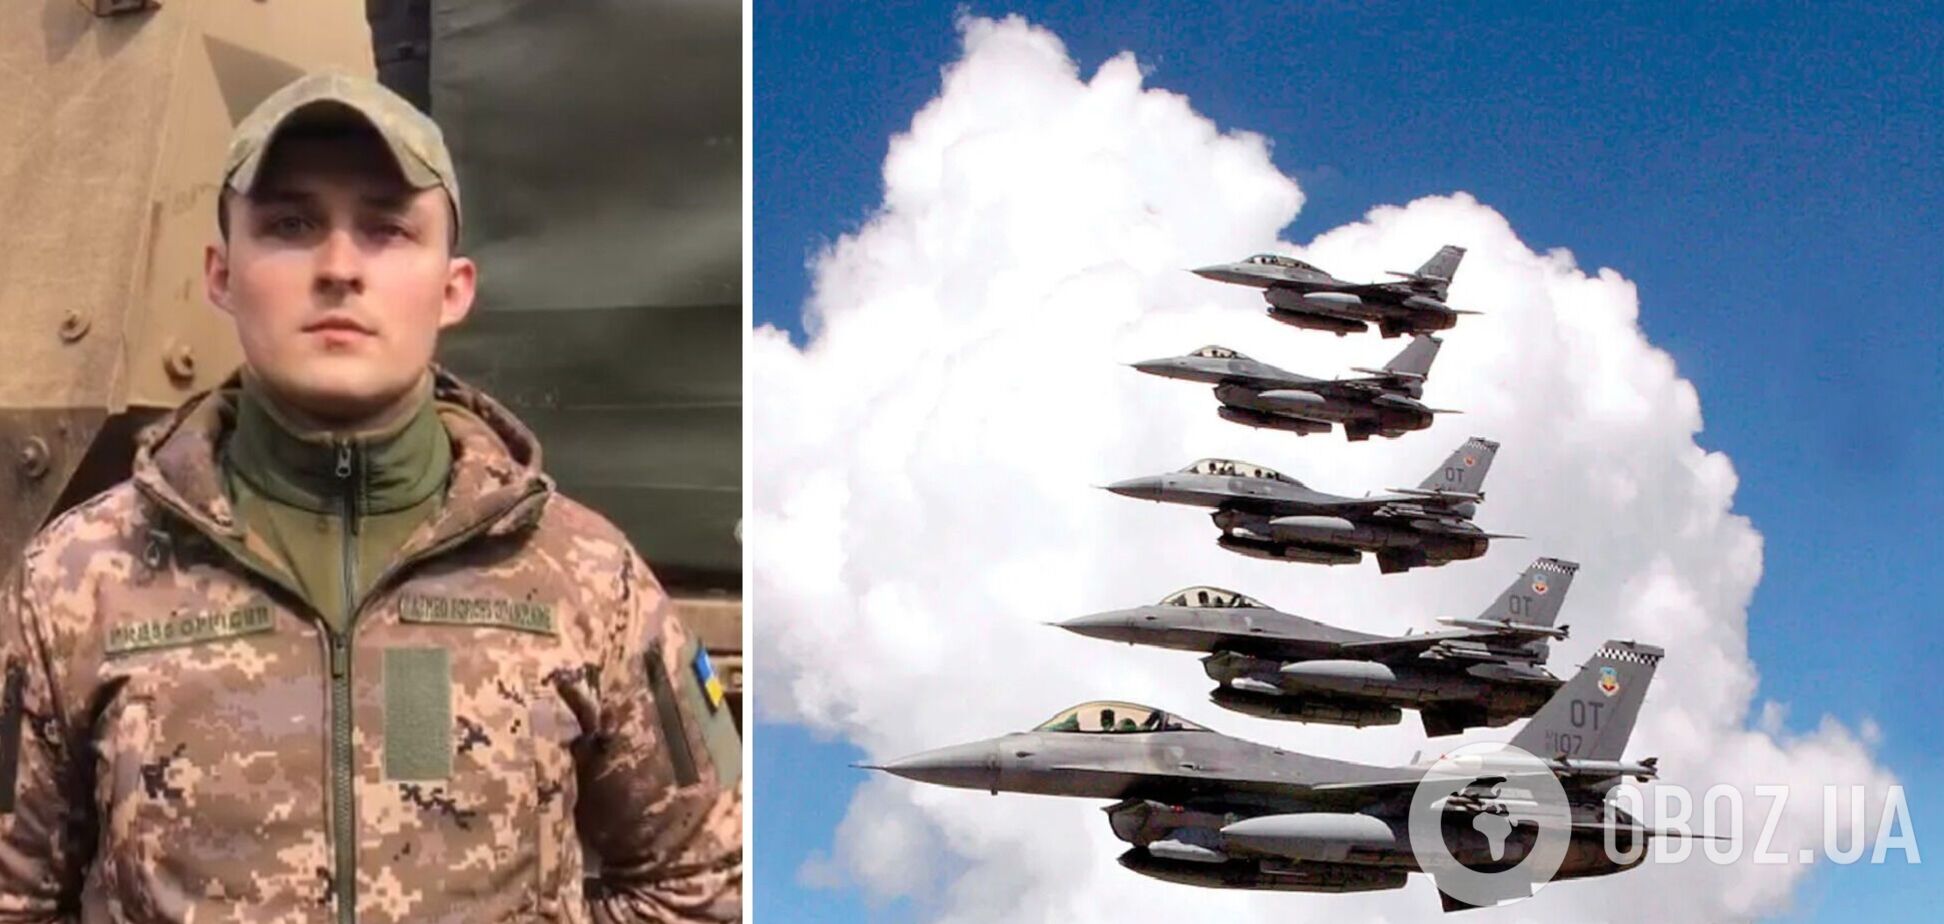 'Обучение продолжается постоянно': в ВС сказали, когда украинские пилоты сядут за штурвал F-16